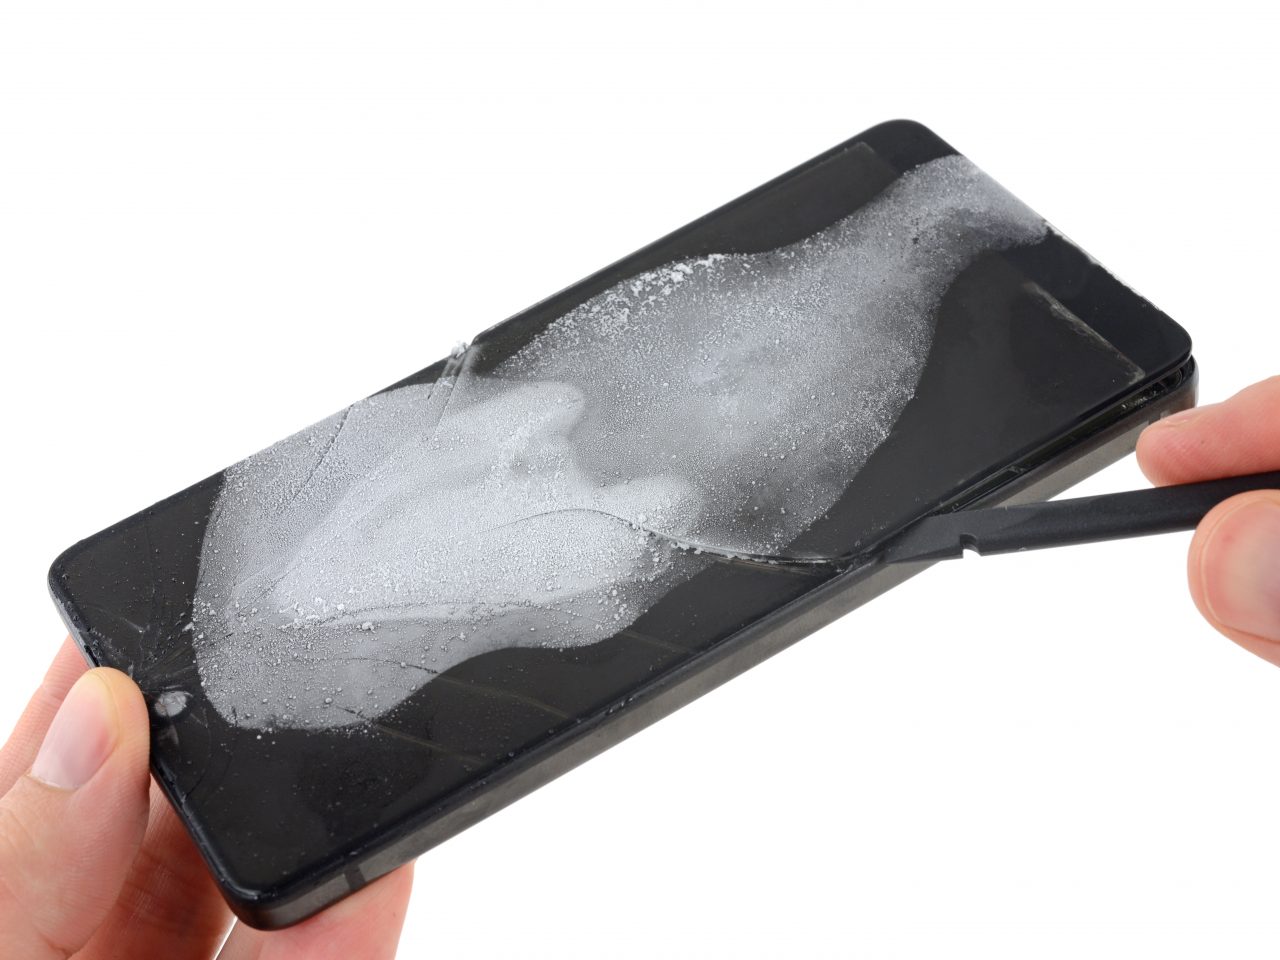 Essential Phone è praticamente impossibile da riparare, almeno secondo iFixit